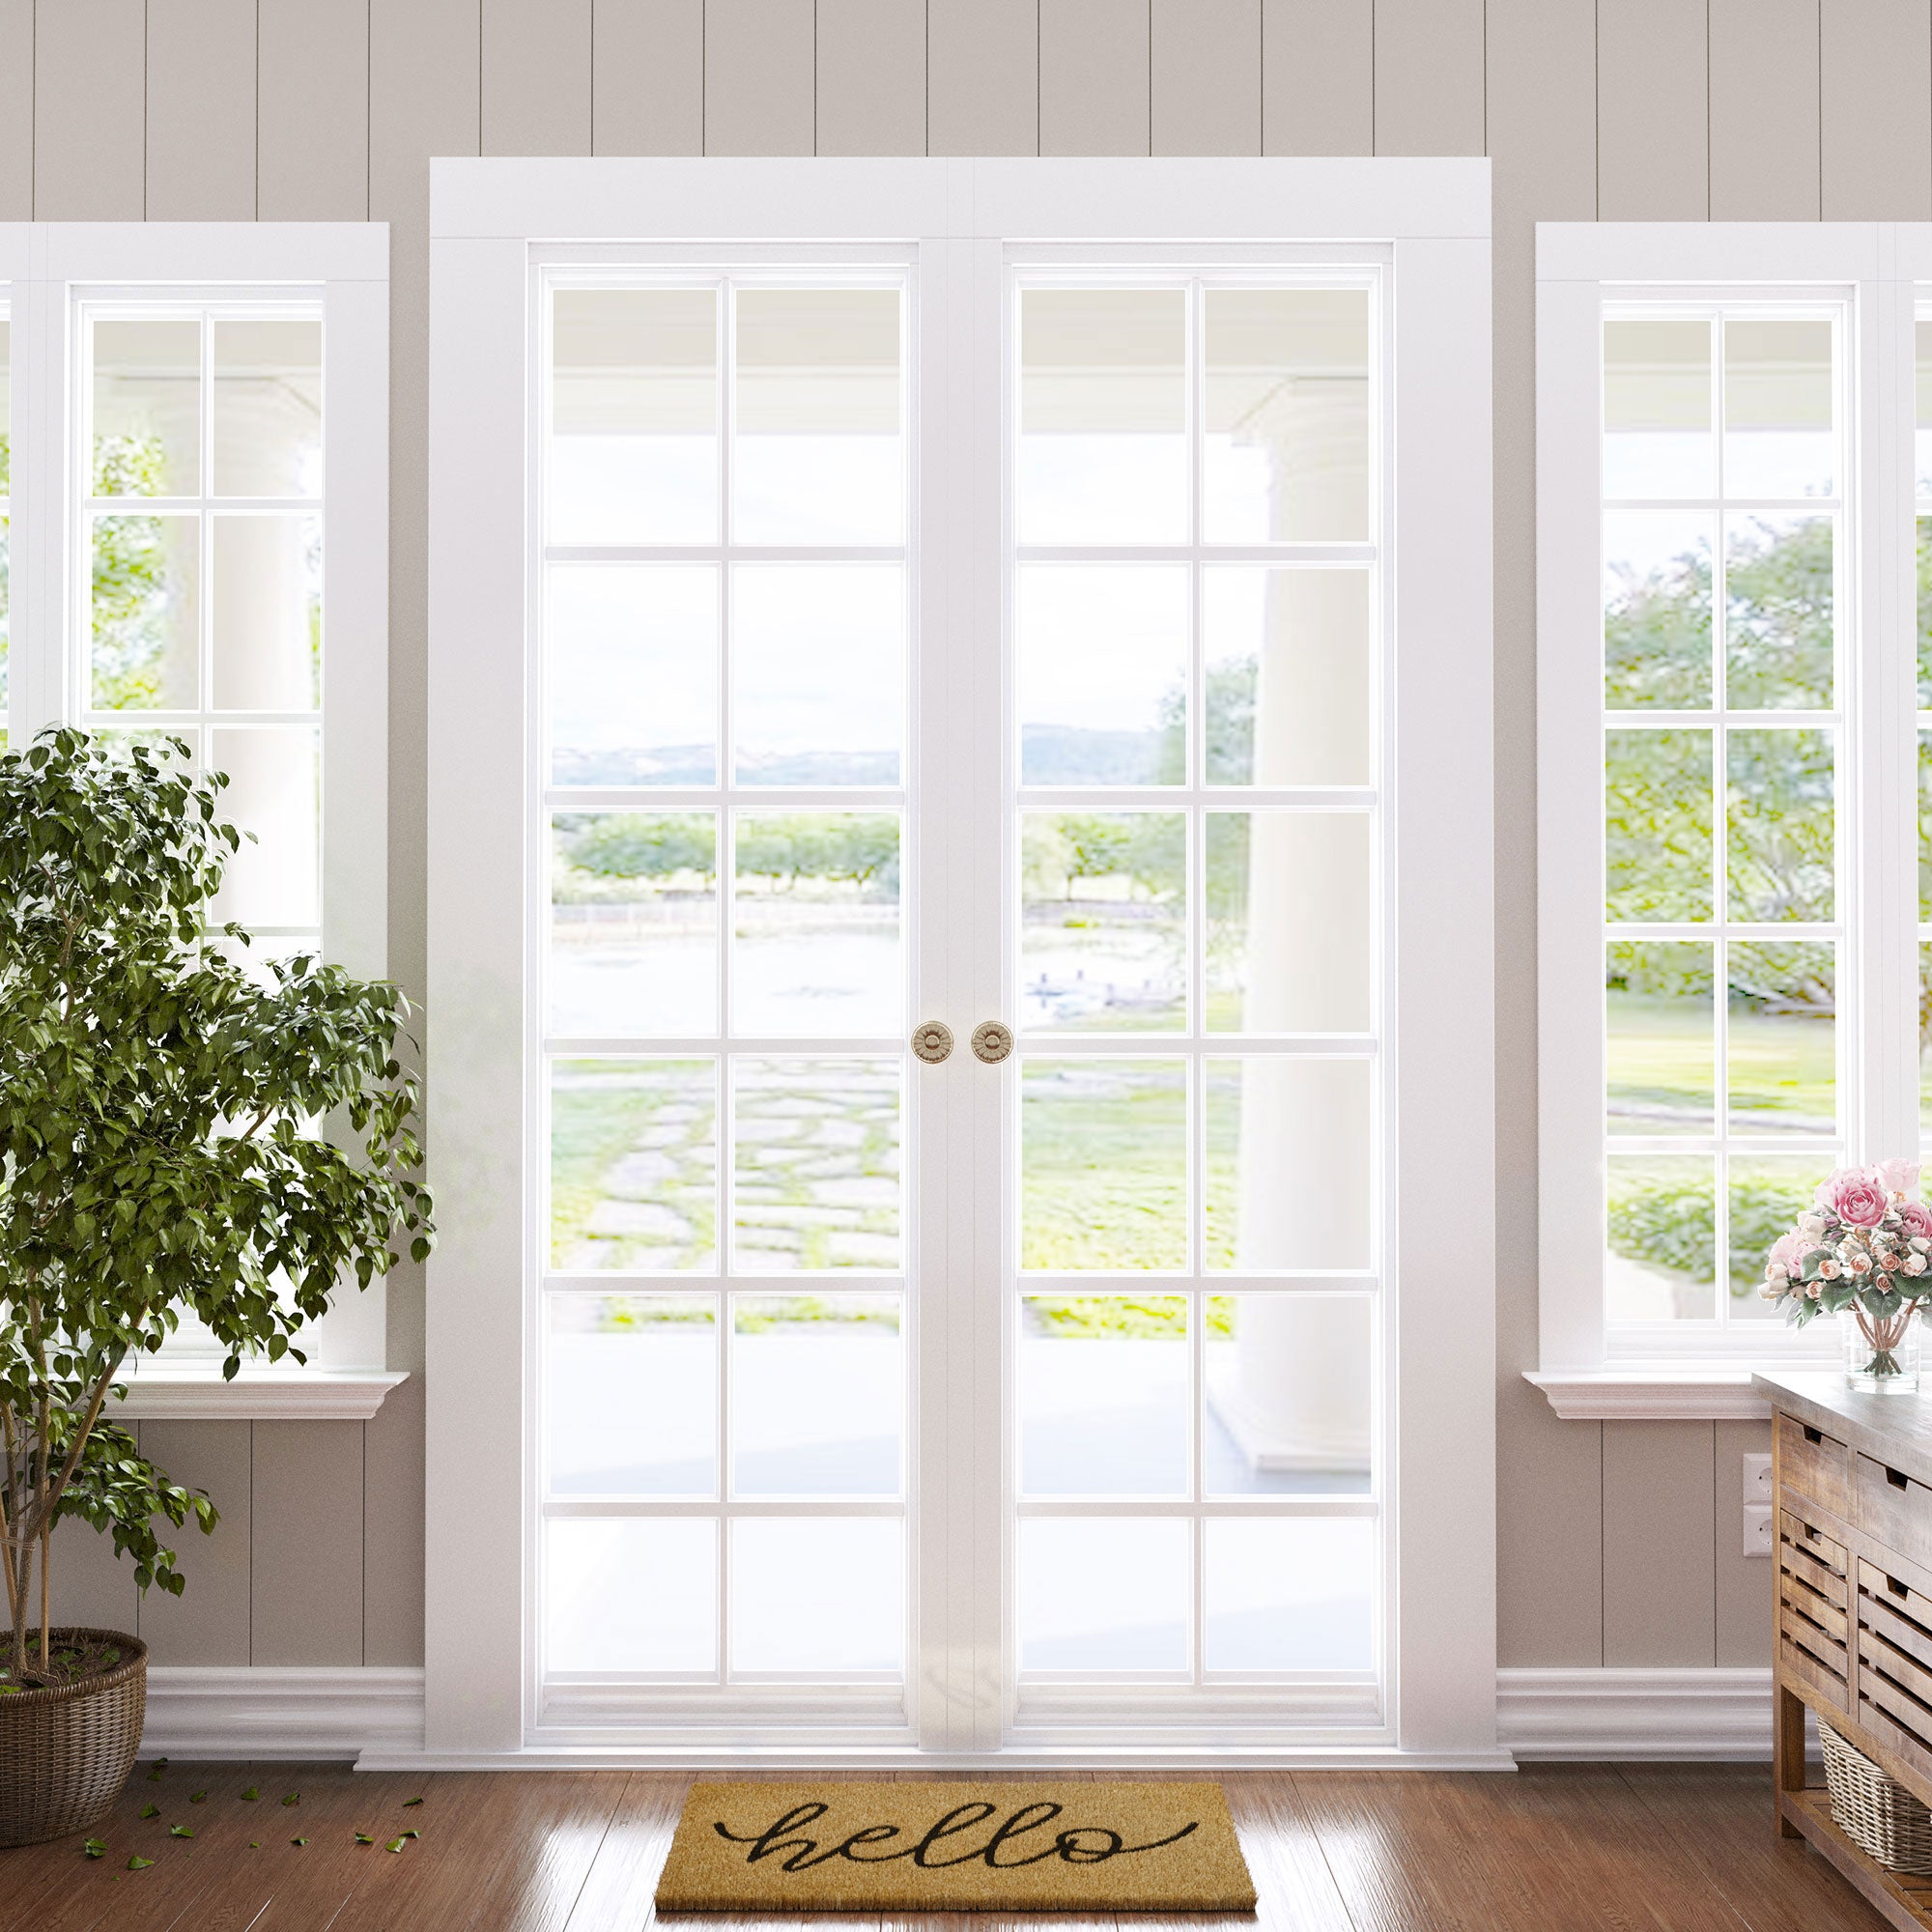 Barnyard Designs 'Welcome' Half Moon Doormat Welcome Mat for Outdoors, Large Front Door Entrance Mat, 30x17, Brown